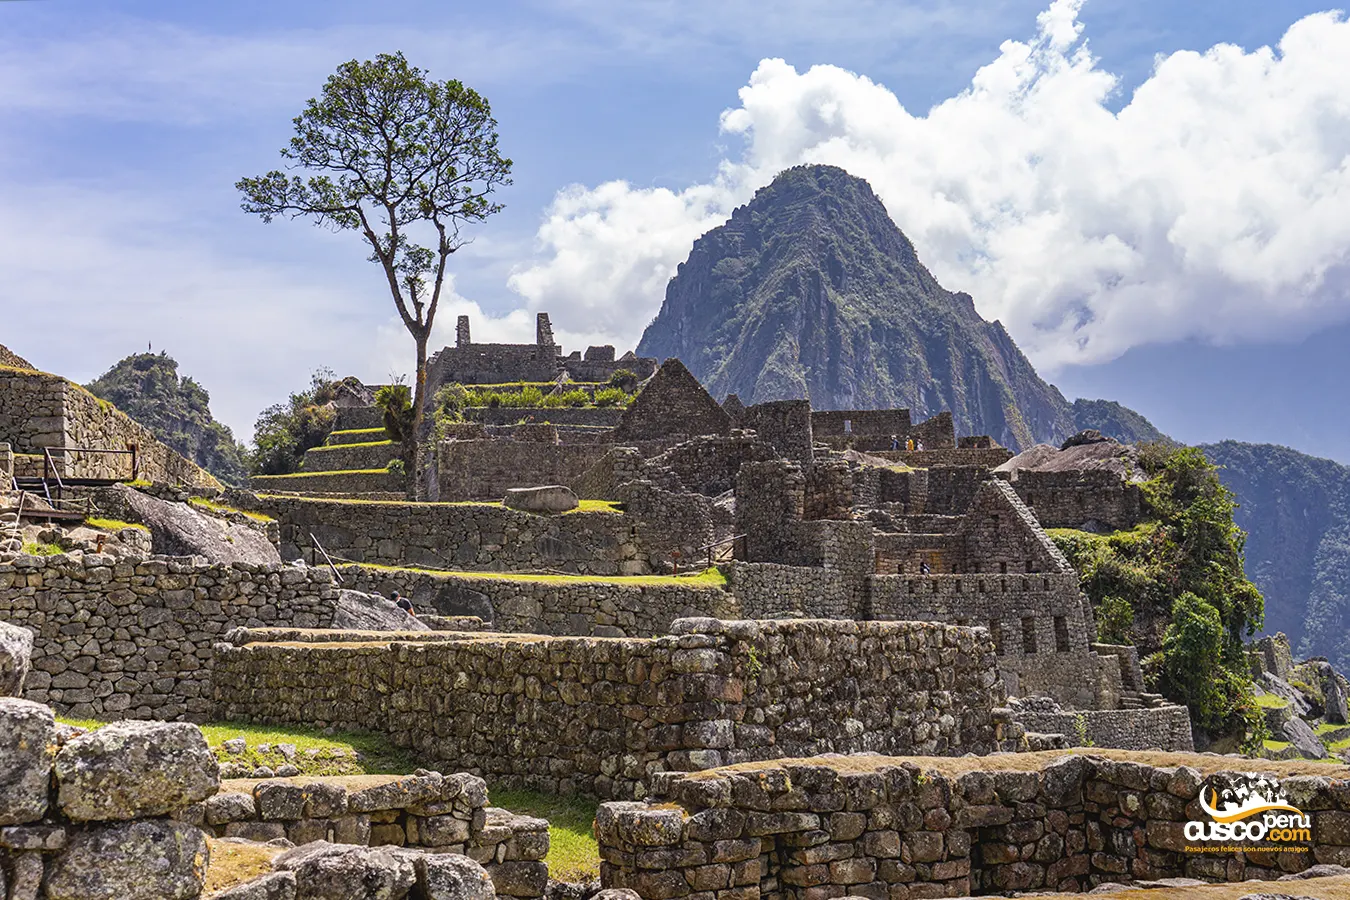 Vista de saída de Machu Picchu. Fonte: CuscoPeru.com